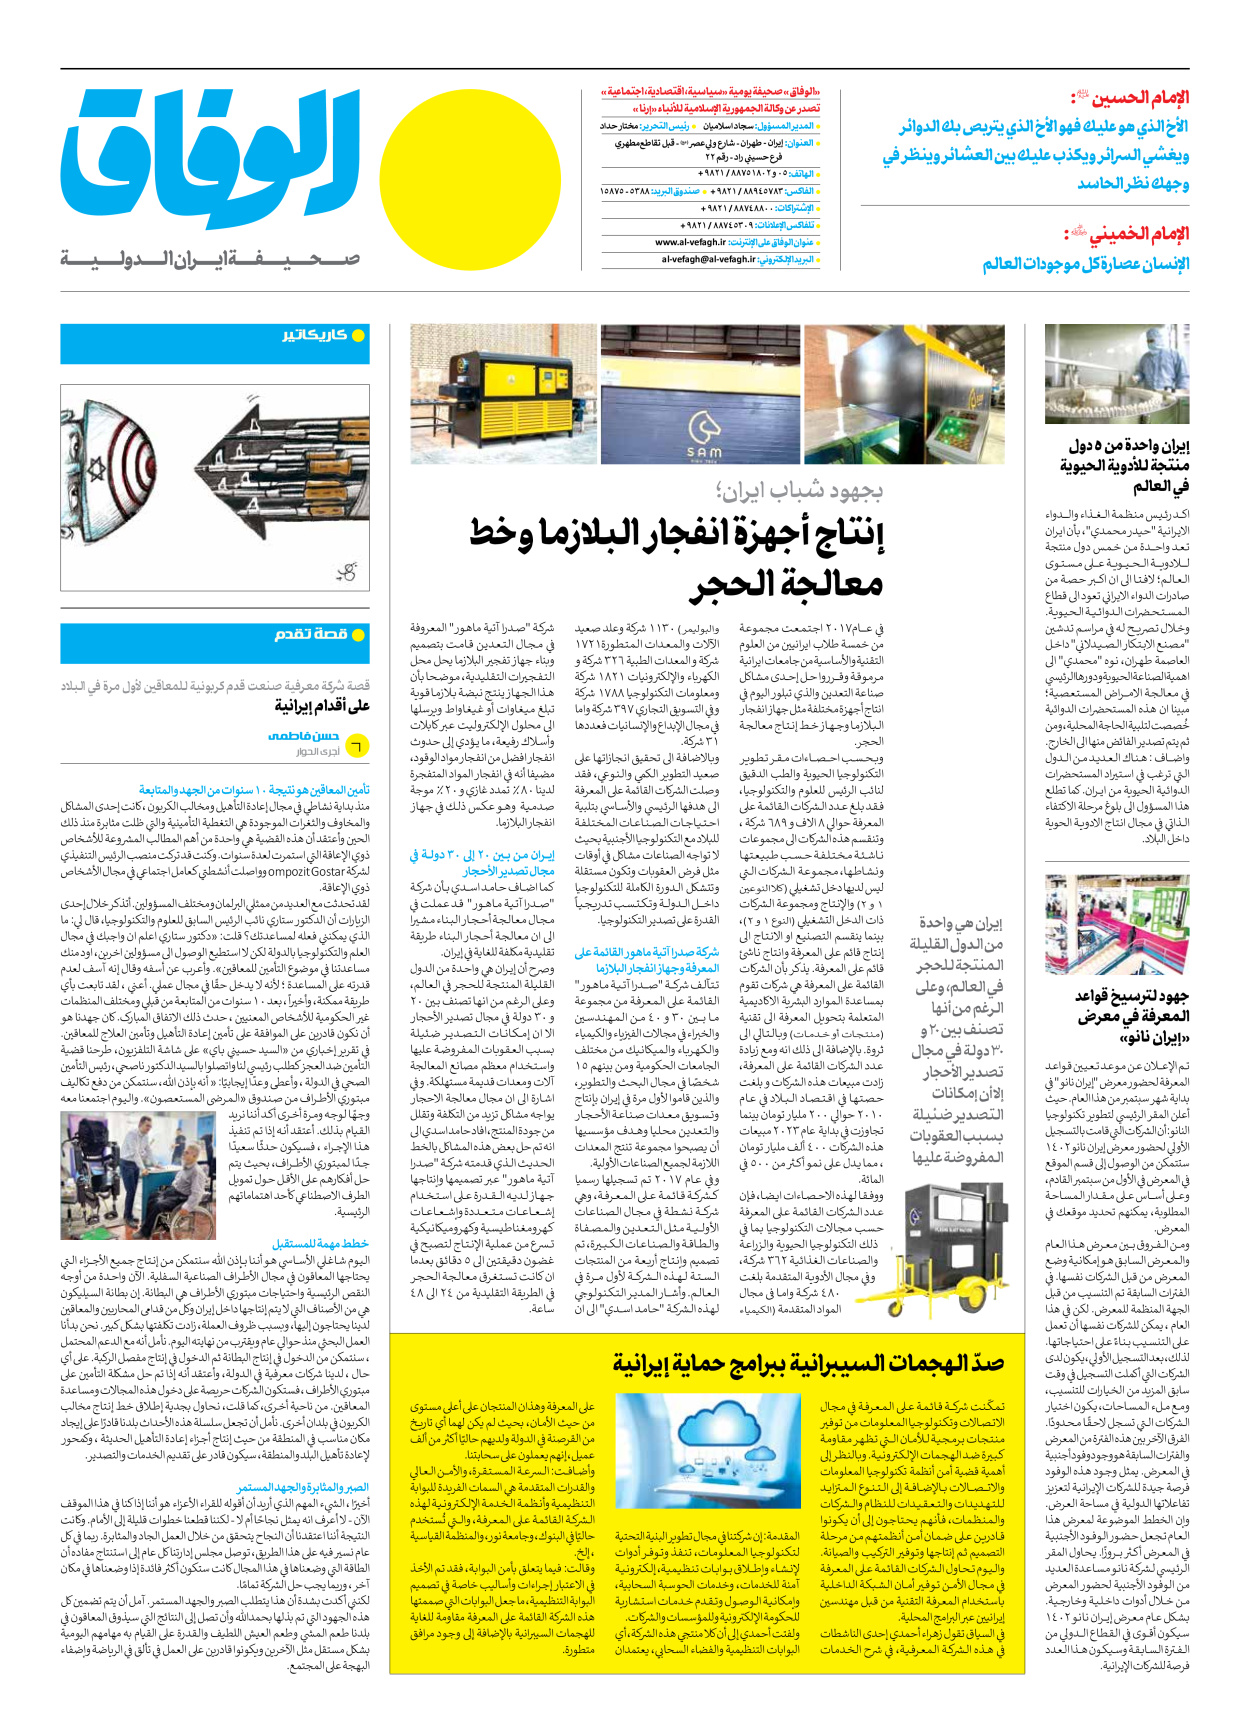 صحیفة ایران الدولیة الوفاق - العدد سبعة آلاف وثلاثمائة - ٠٧ أغسطس ٢٠٢٣ - الصفحة ۱۲